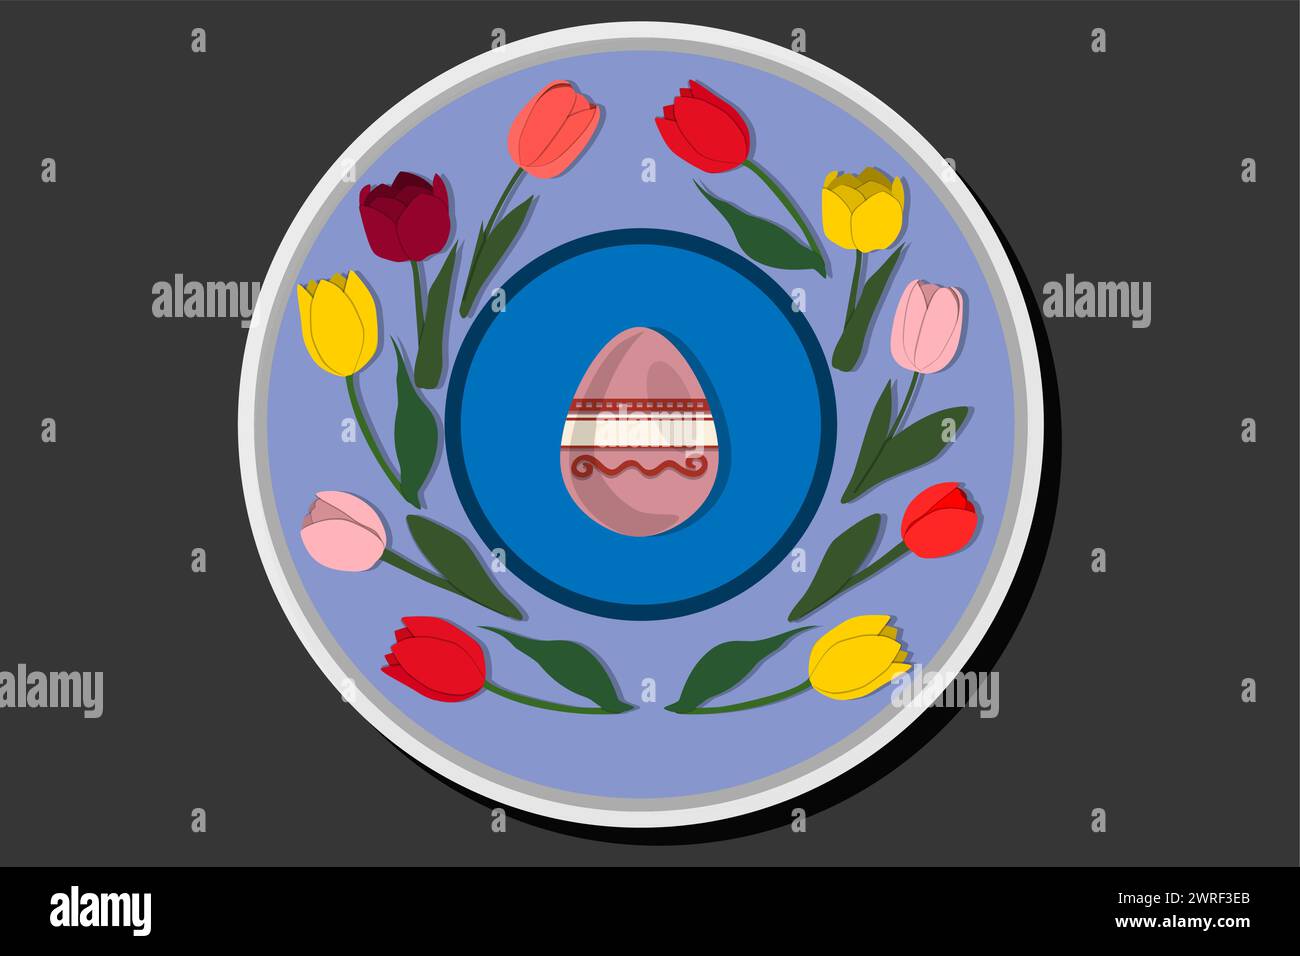 Illustrazione delle festività a tema di Pasqua con la caccia alle uova colorate, striscione composto da diverse uova di Pasqua, caccia alla splendida Easte Illustrazione Vettoriale